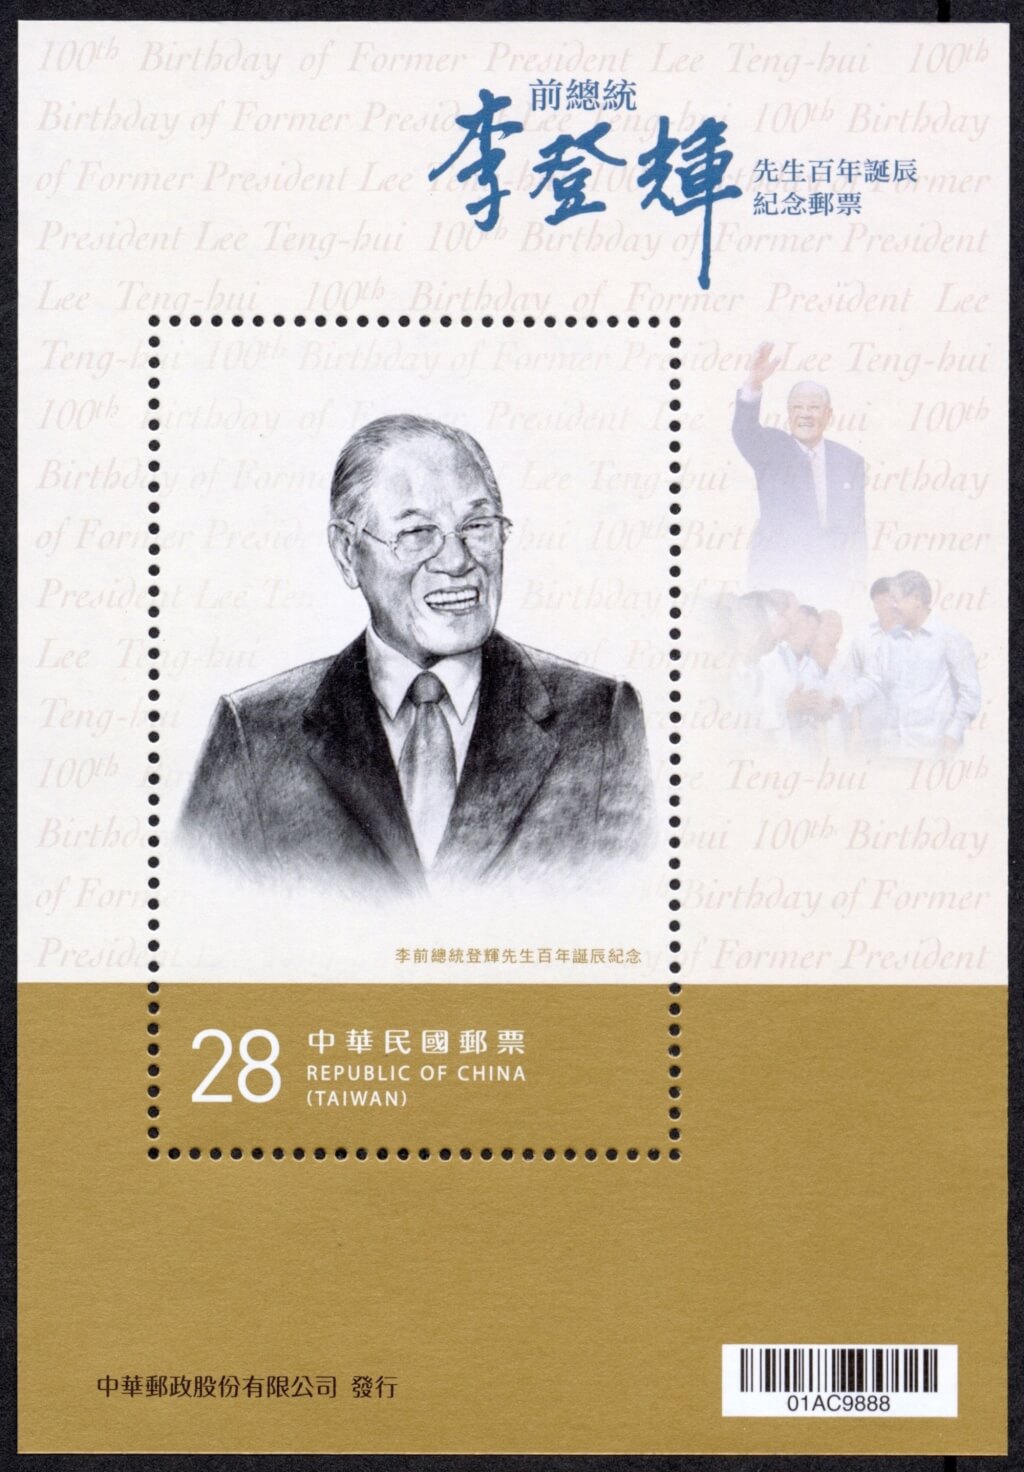 看世界／李登辉百年诞辰 中华邮政13日发行纪念邮票